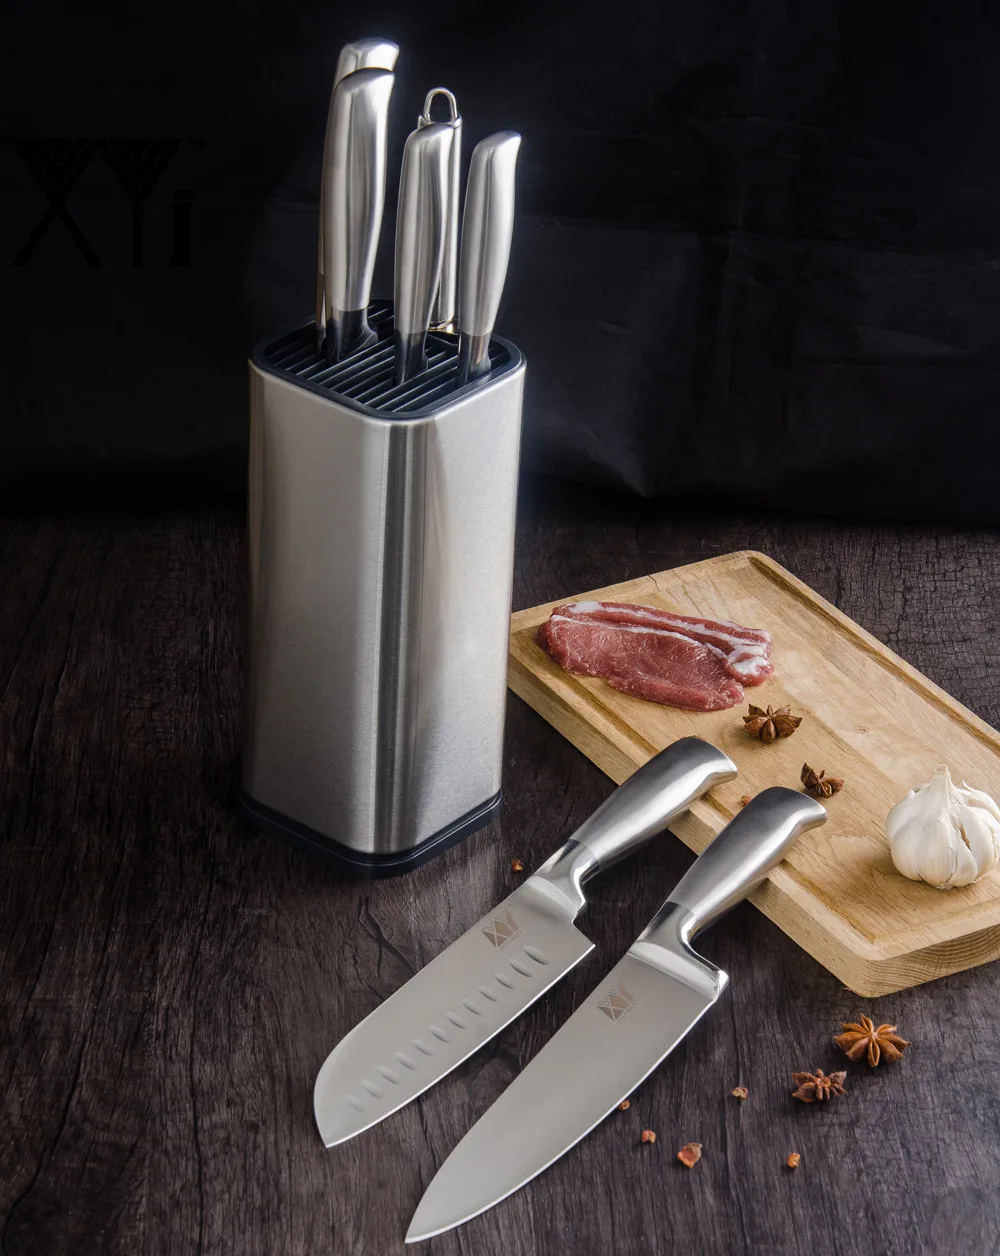 XYj набор кухонных ножей из нержавеющей стали, кухонные принадлежности, Держатель ножей из нержавеющей стали, точилка для ножей, кухонная принадлежность шеф-повара, лучший инструмент